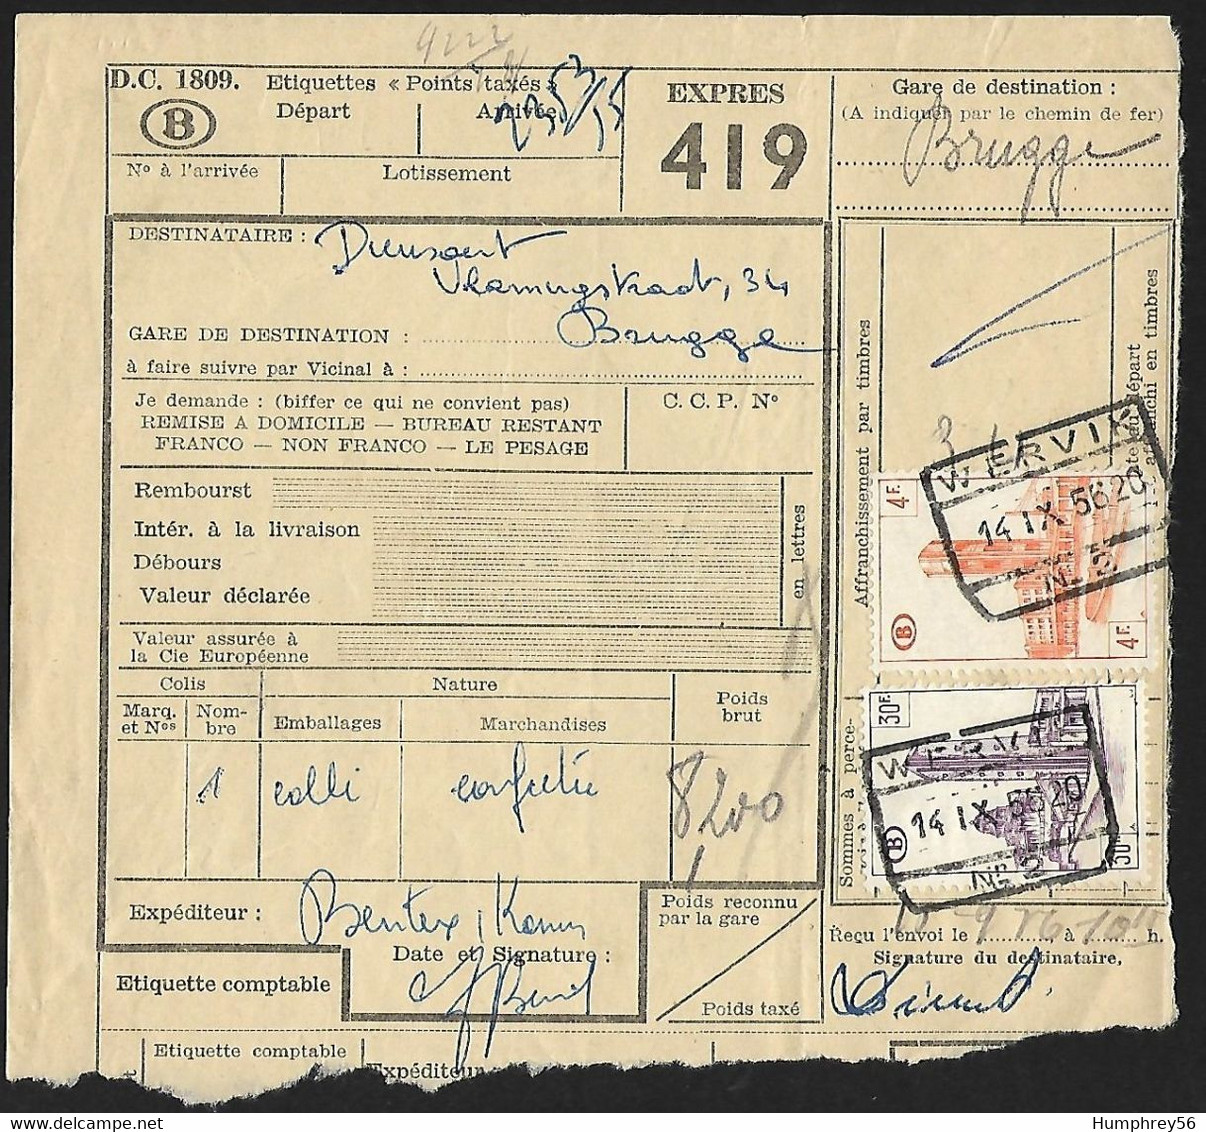 1956 - BELGIË/BELGIQUE/BELGIEN - Y&T CP339 & CP349 + WERVIK & BRUGGE - Documenten & Fragmenten